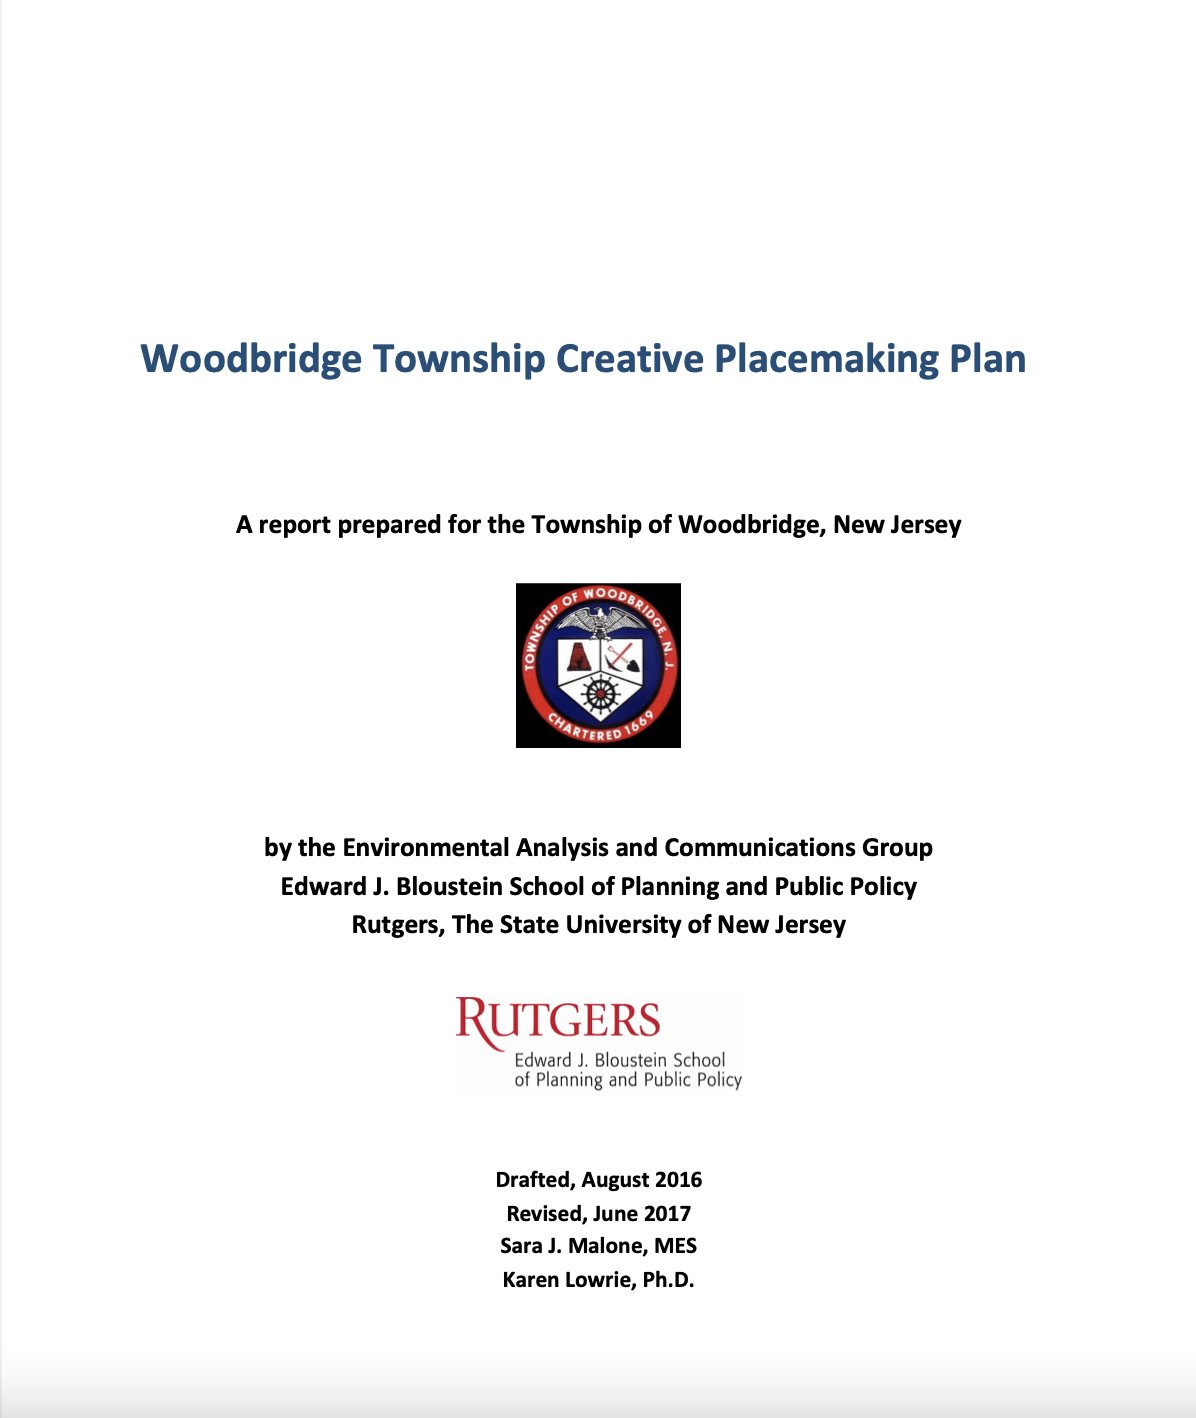 Woodbridge Township Creative Placemaking Plan